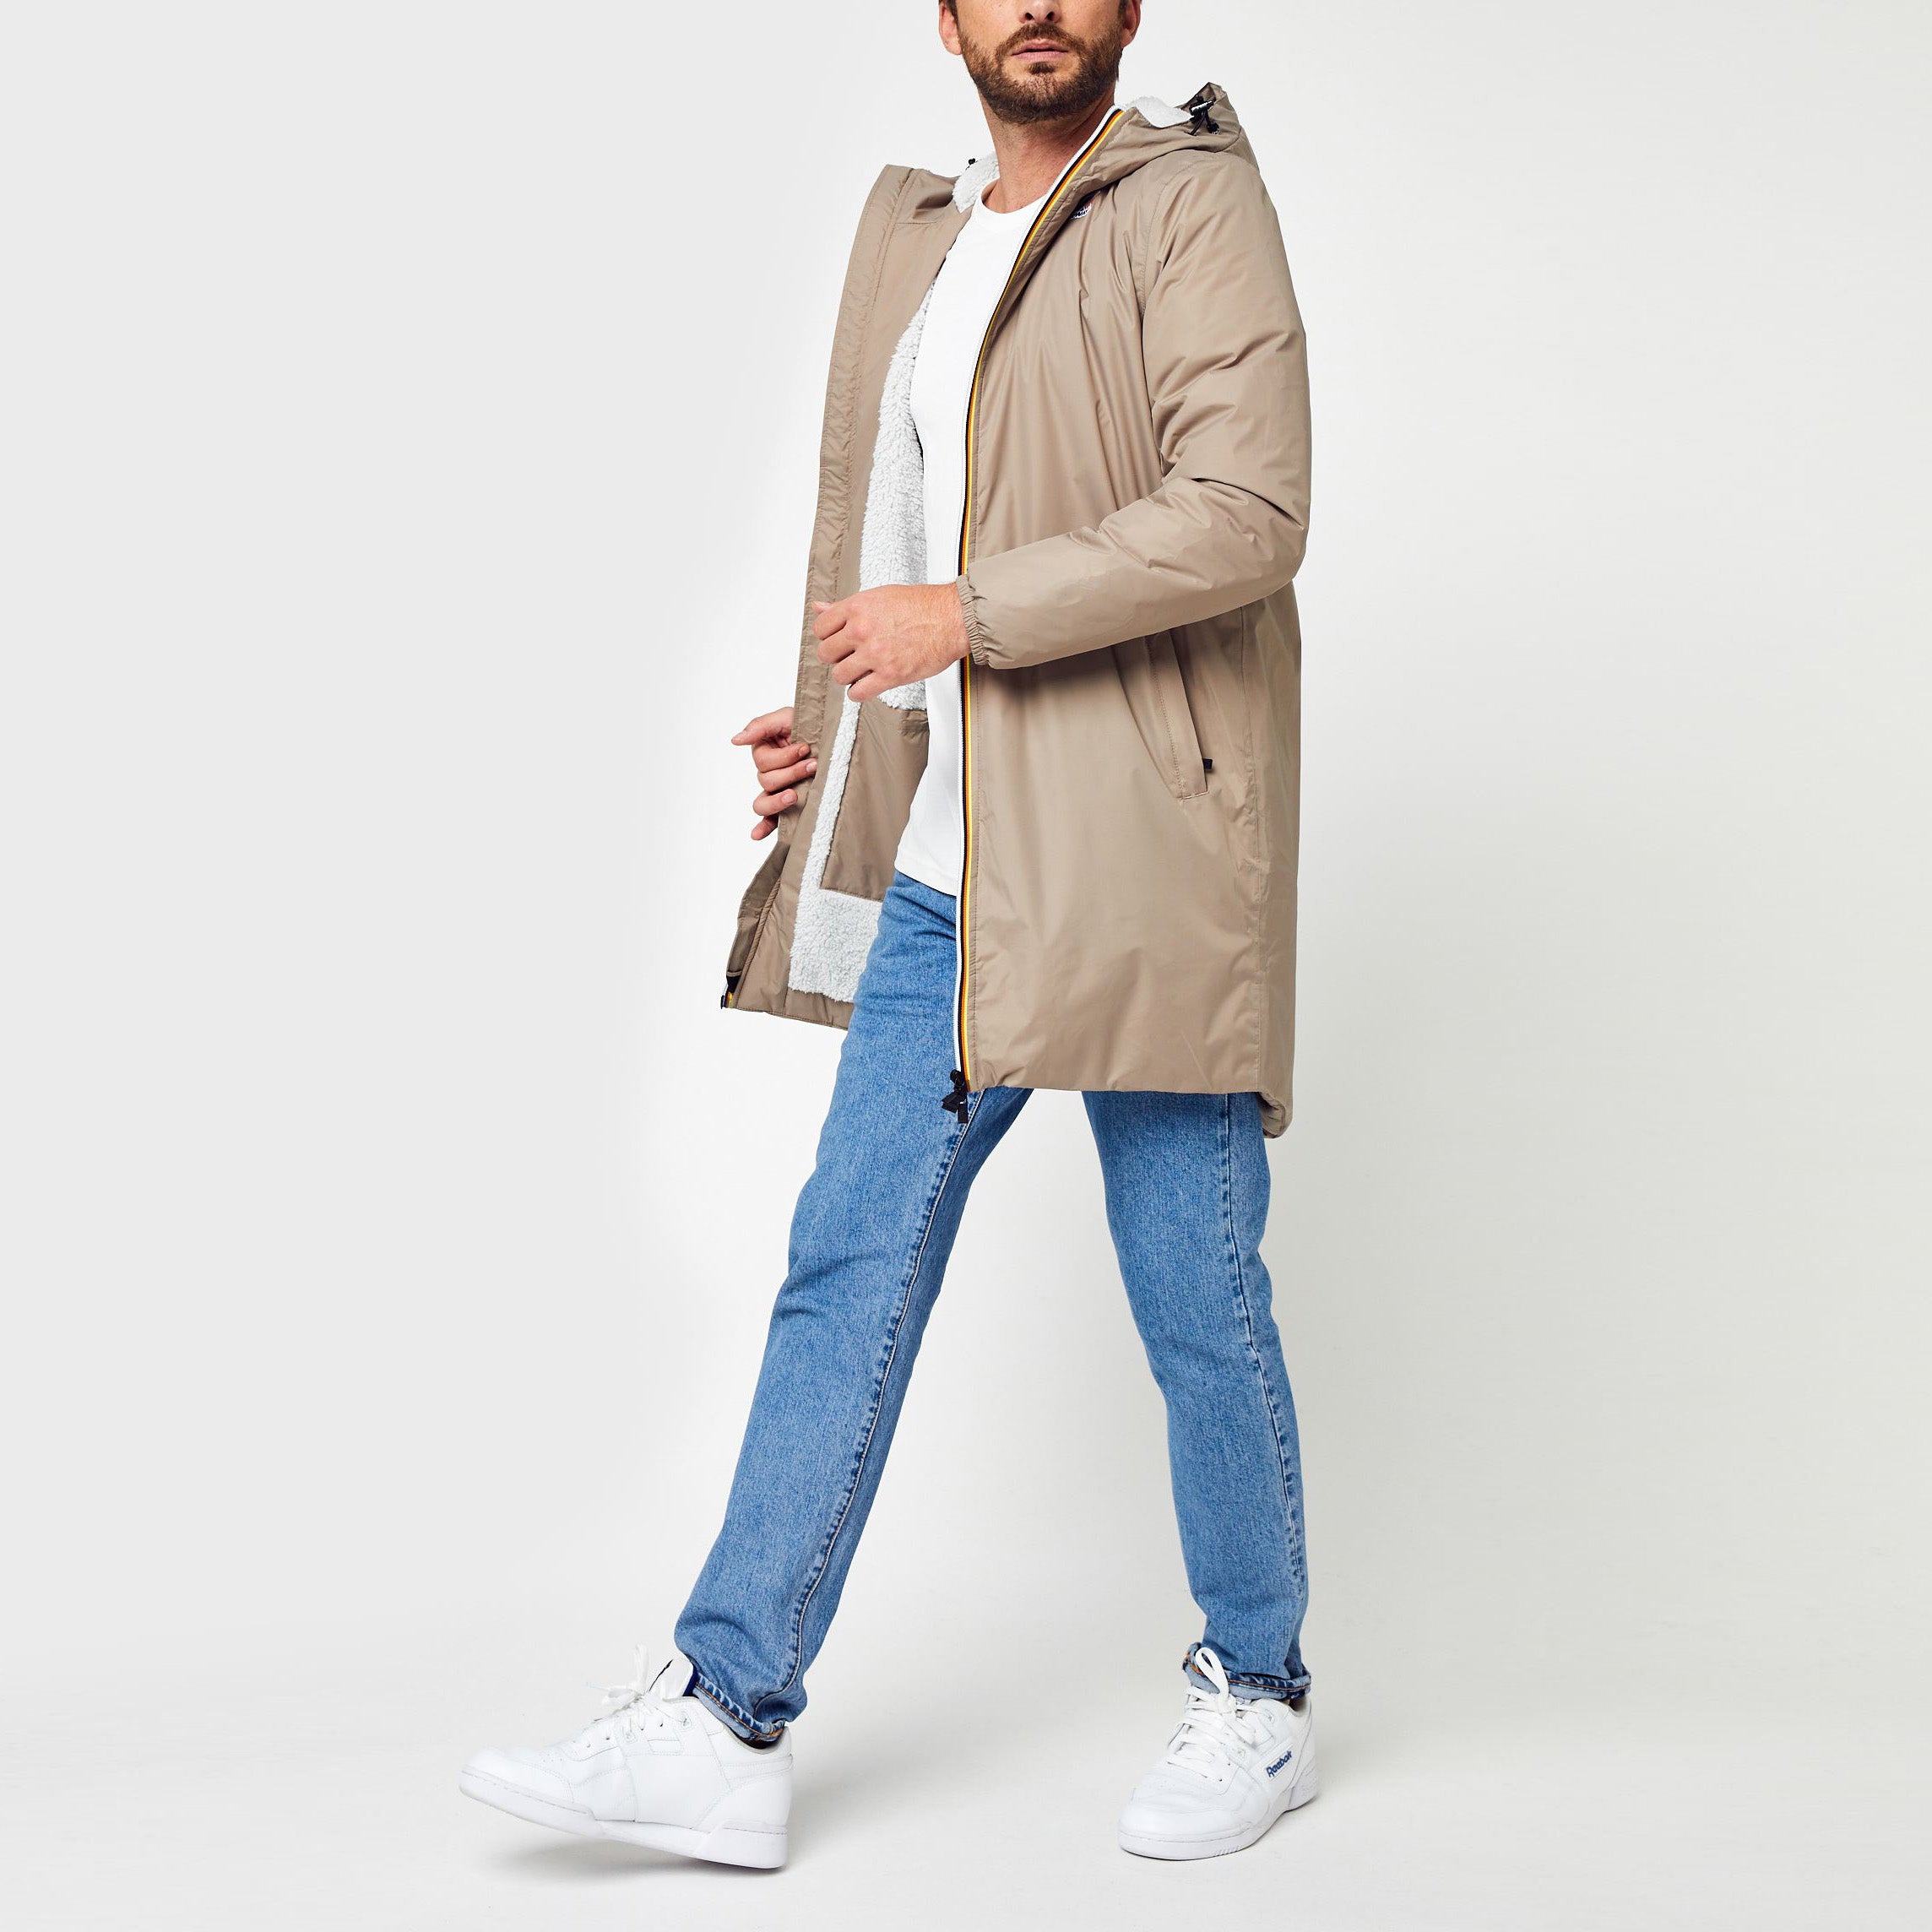 Eiffel Orsetto - Unisex Packable Lined Long Rain Jacket in Beige Grey